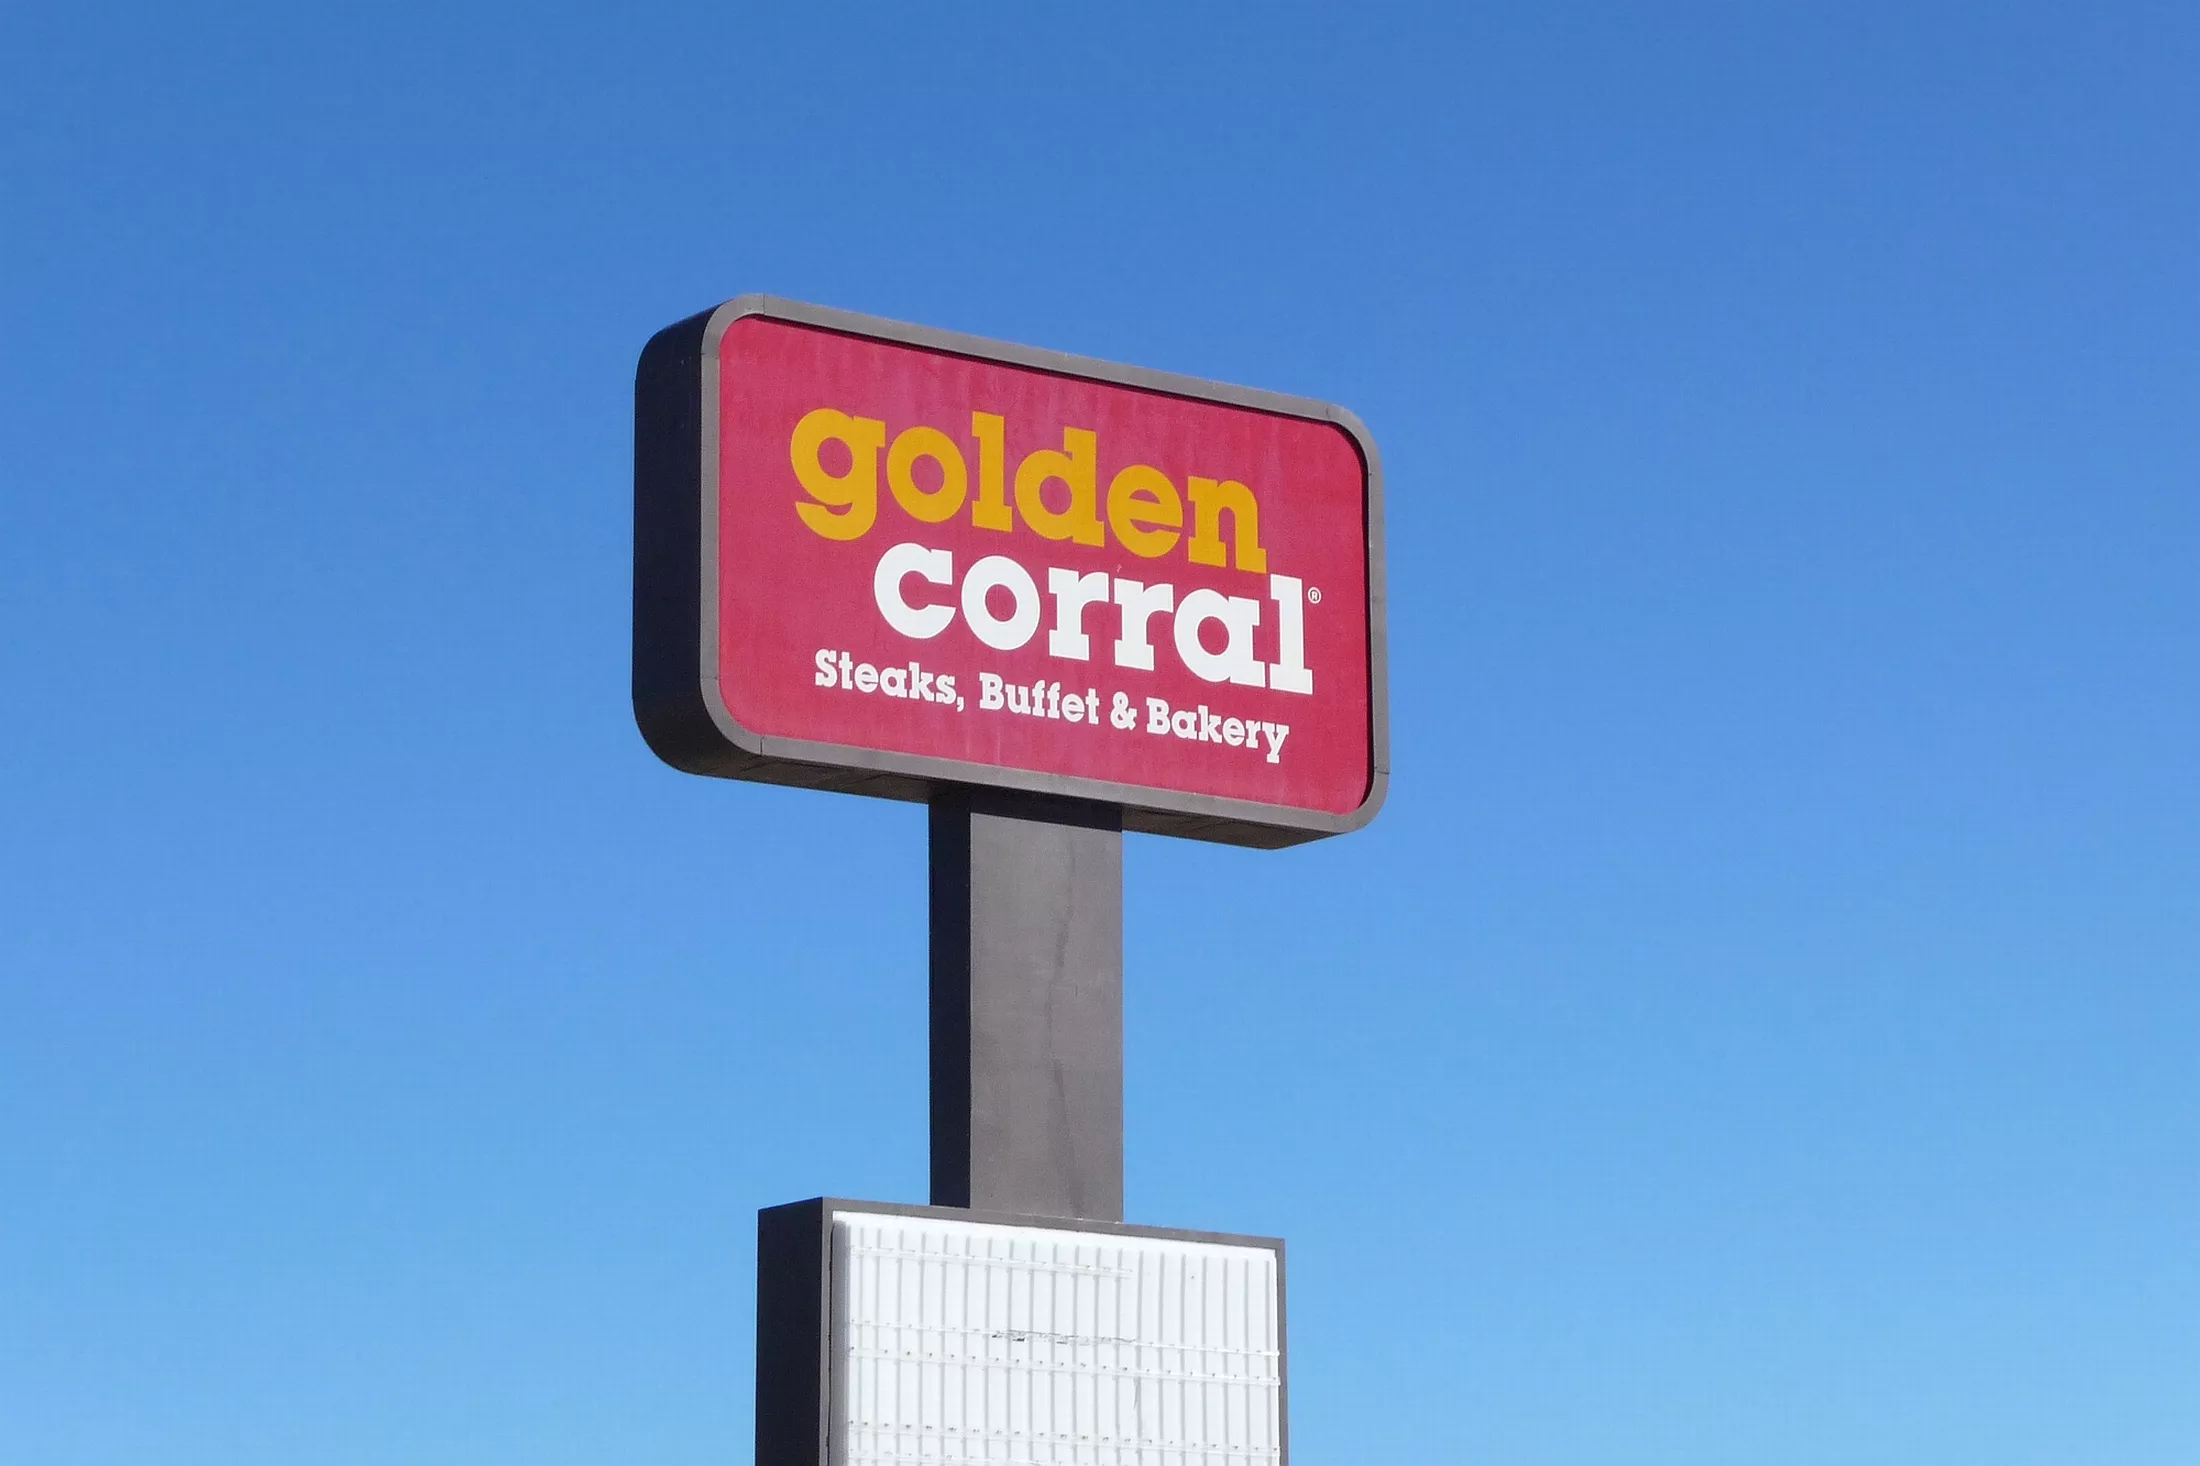  restaurant buffet golden corral 